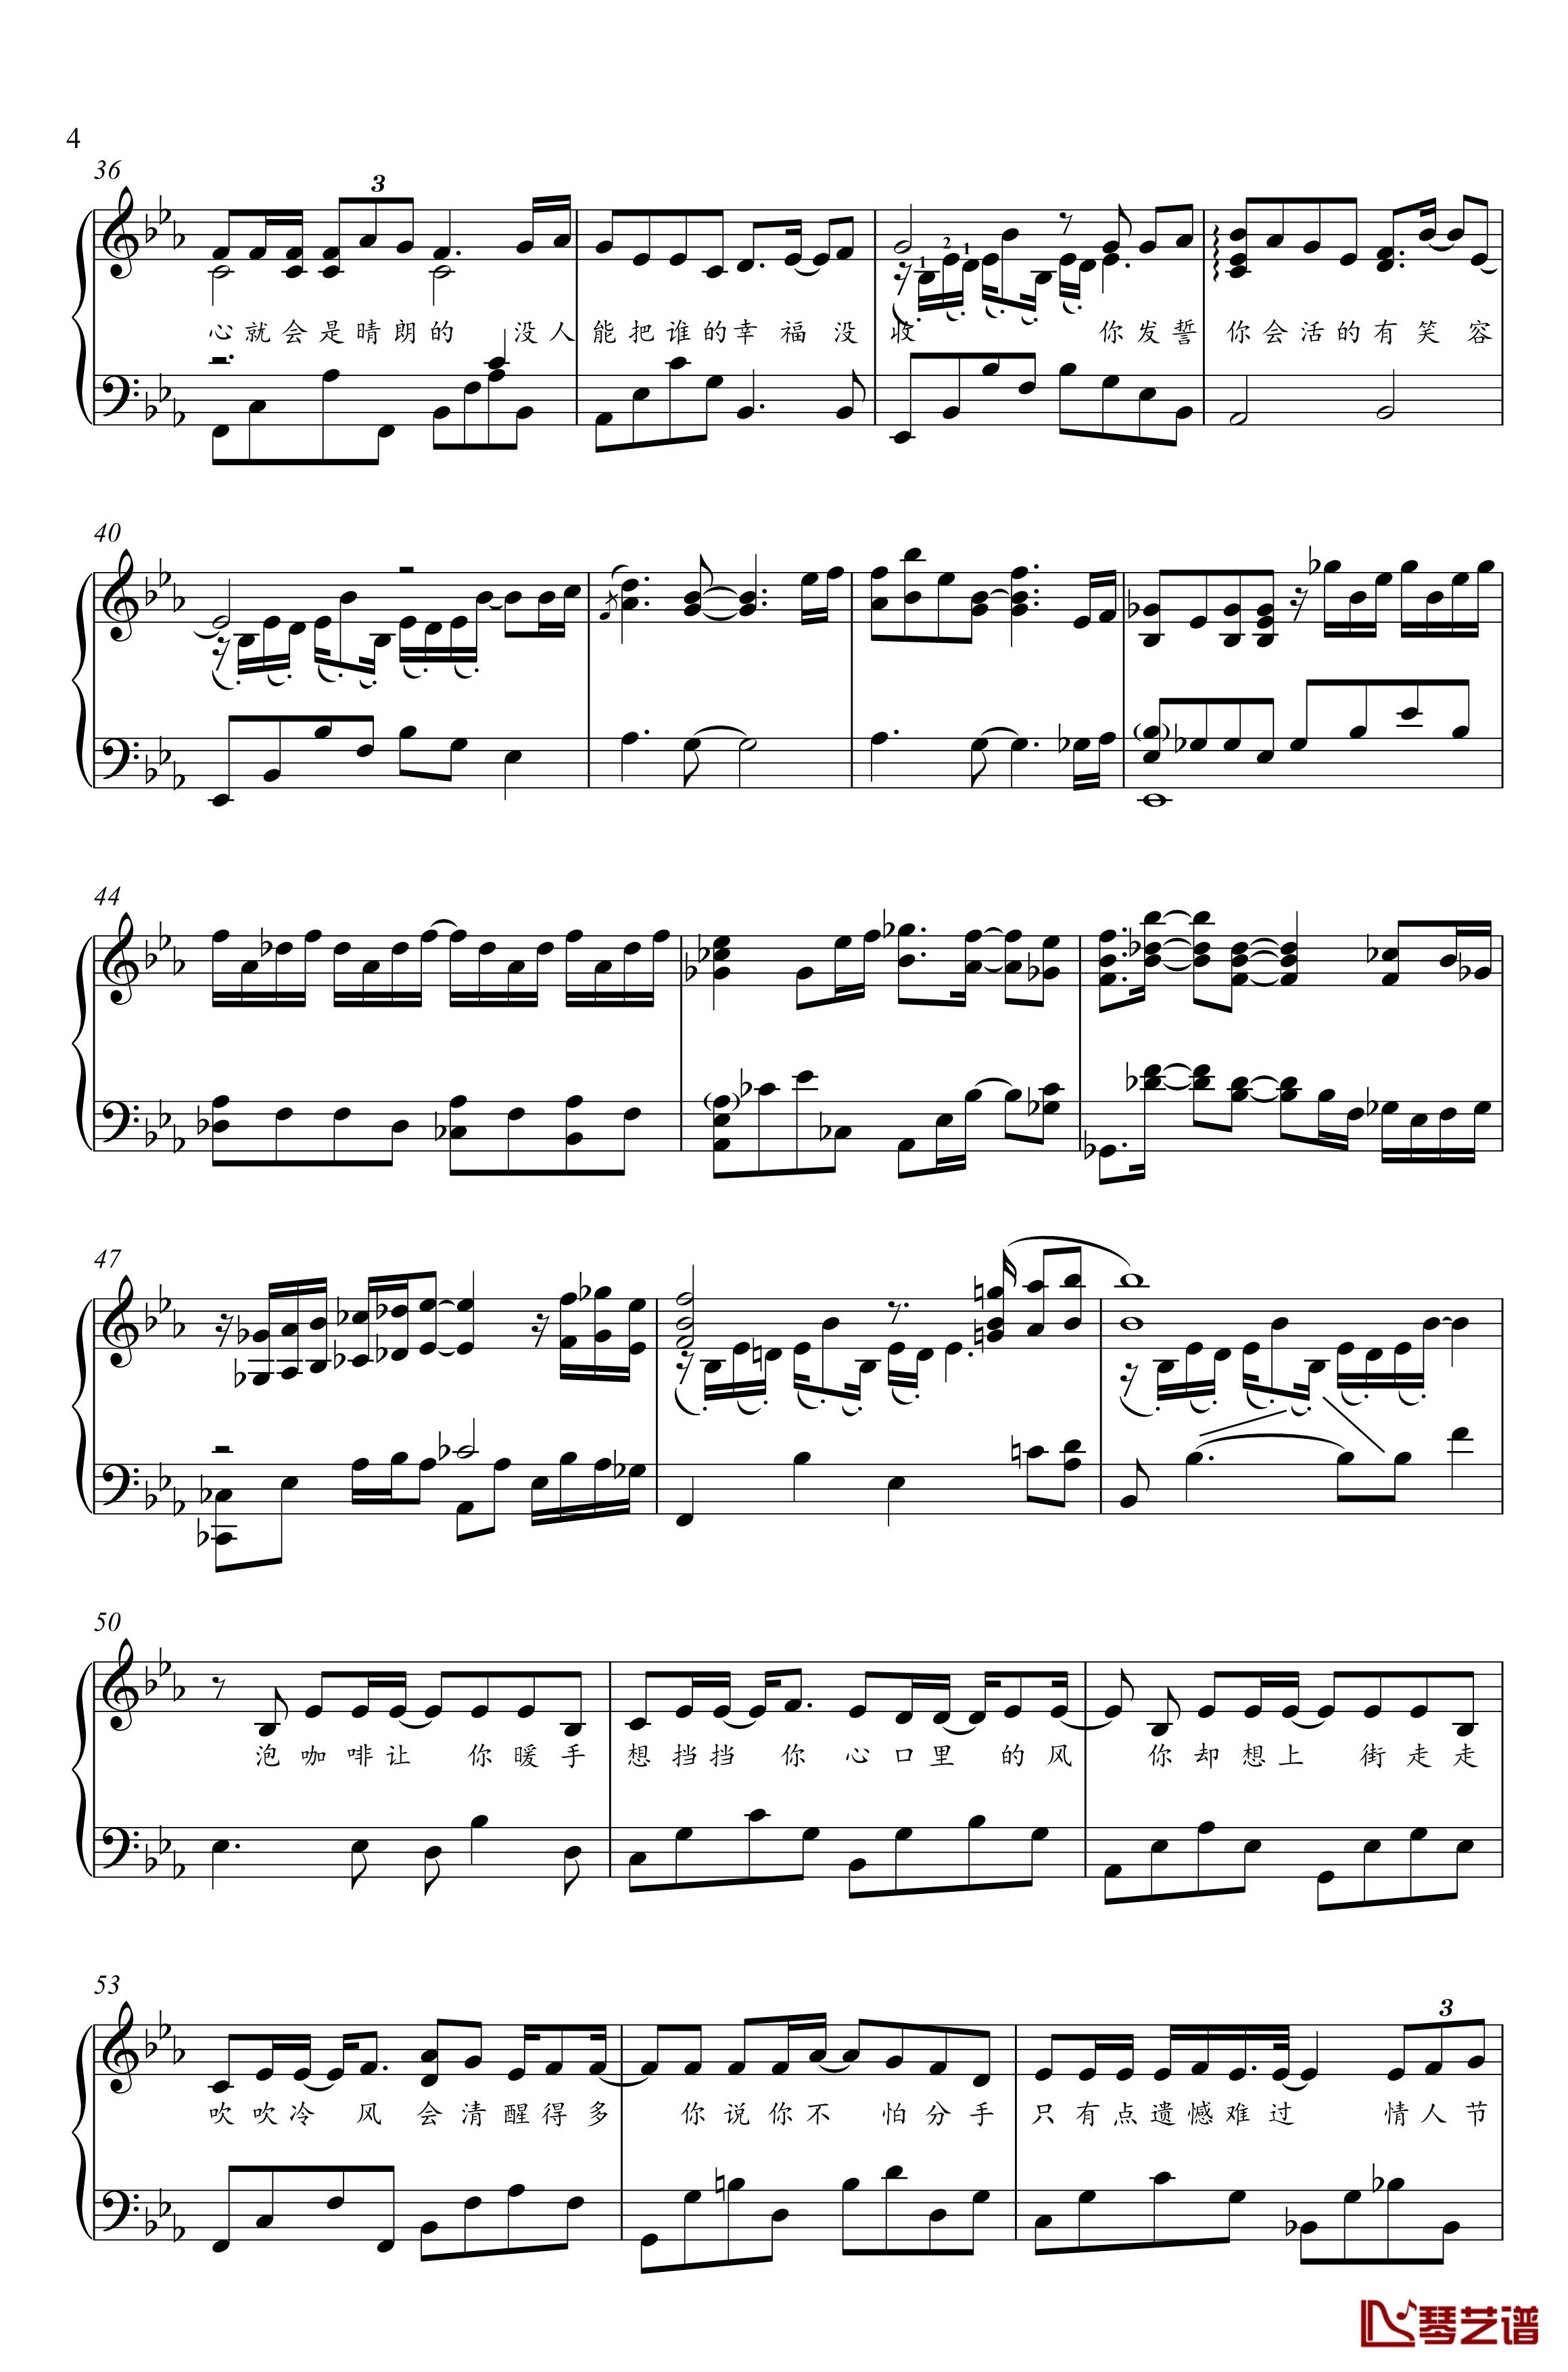 分手快乐钢琴谱-独奏谱-梁静茹-金老师钢琴1910314